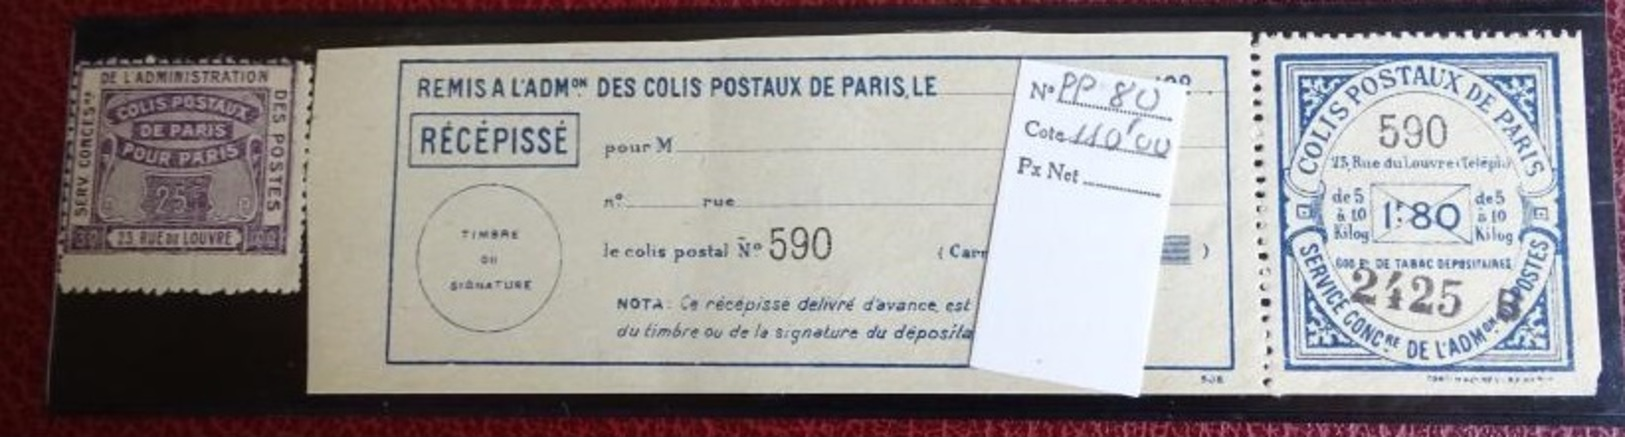 Timbre Colis Postaux De Paris 25 C Et 1 F 80 - Avec Récépissé  N 590 - 2425 B - Neufs